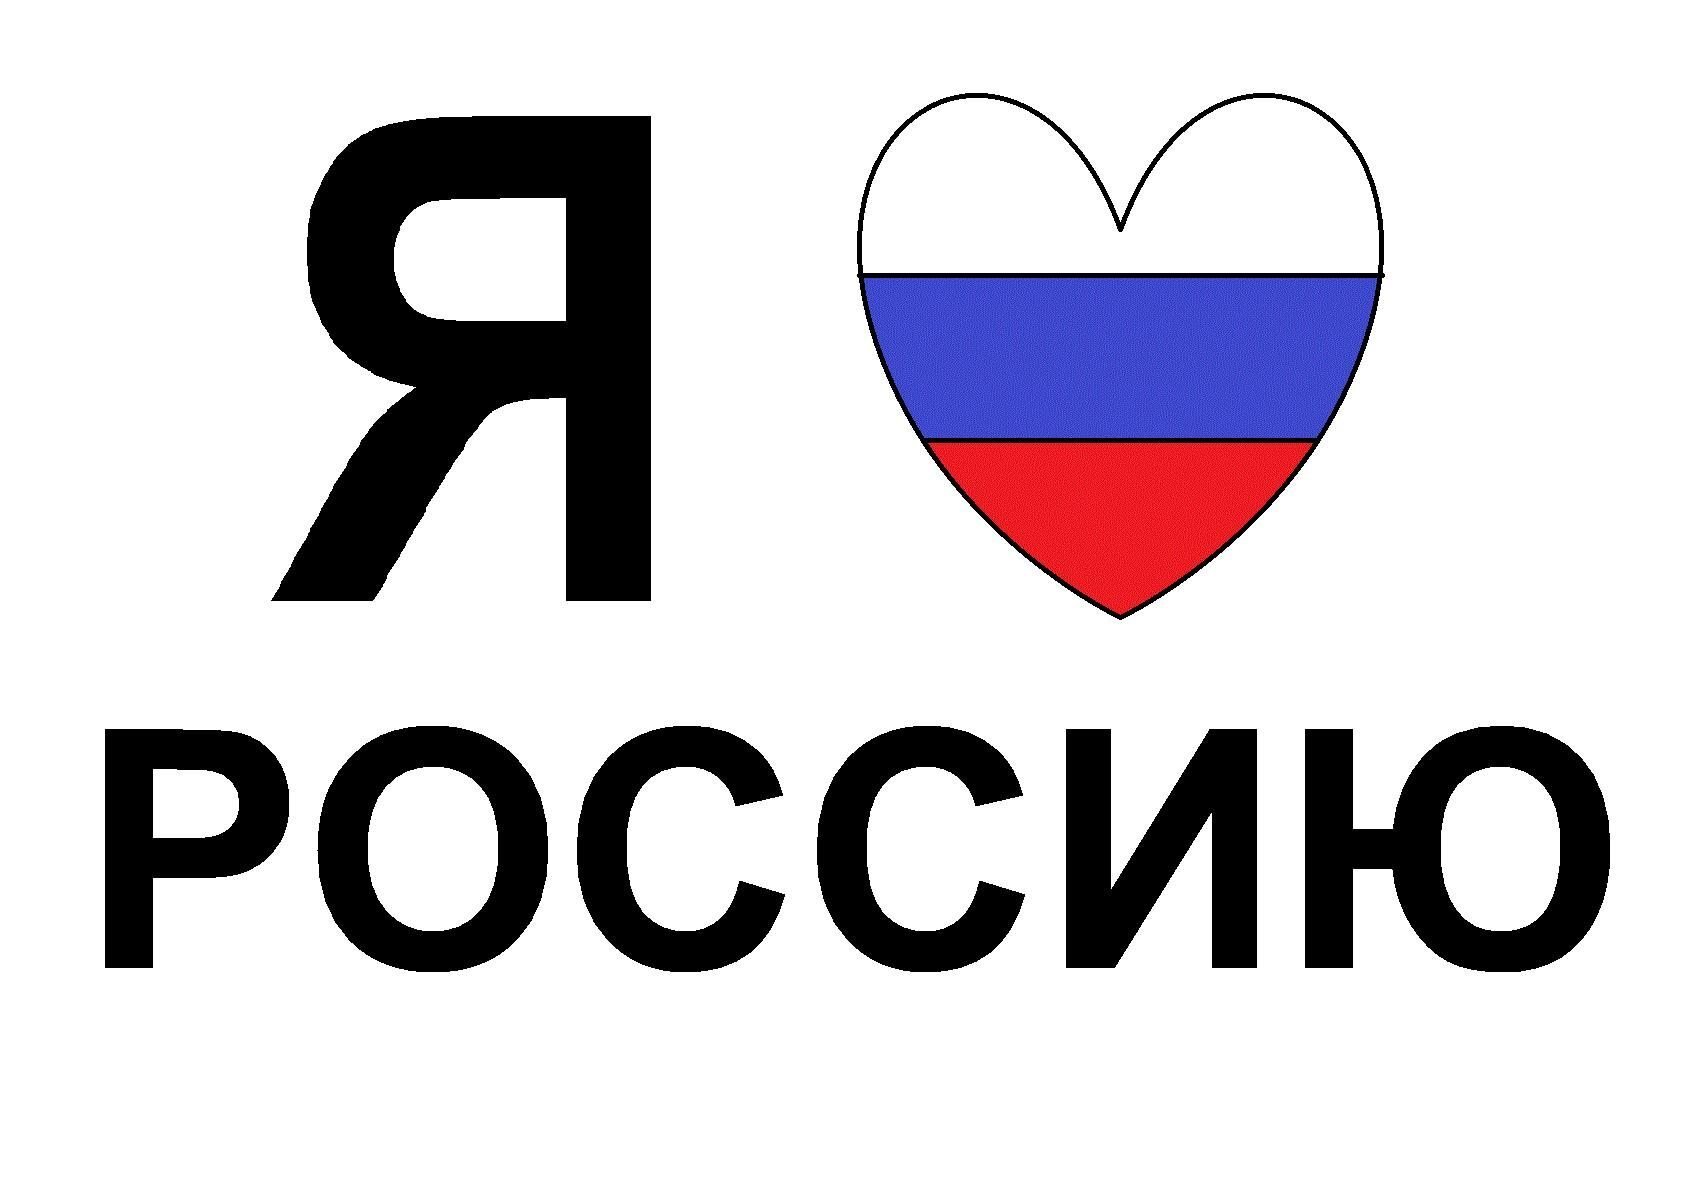 Я люблю Россию. Надпись я люблю Россию. Плакат я люблю Россию. Надпись я люблю Россию с сердечком. Слово россия и флаг